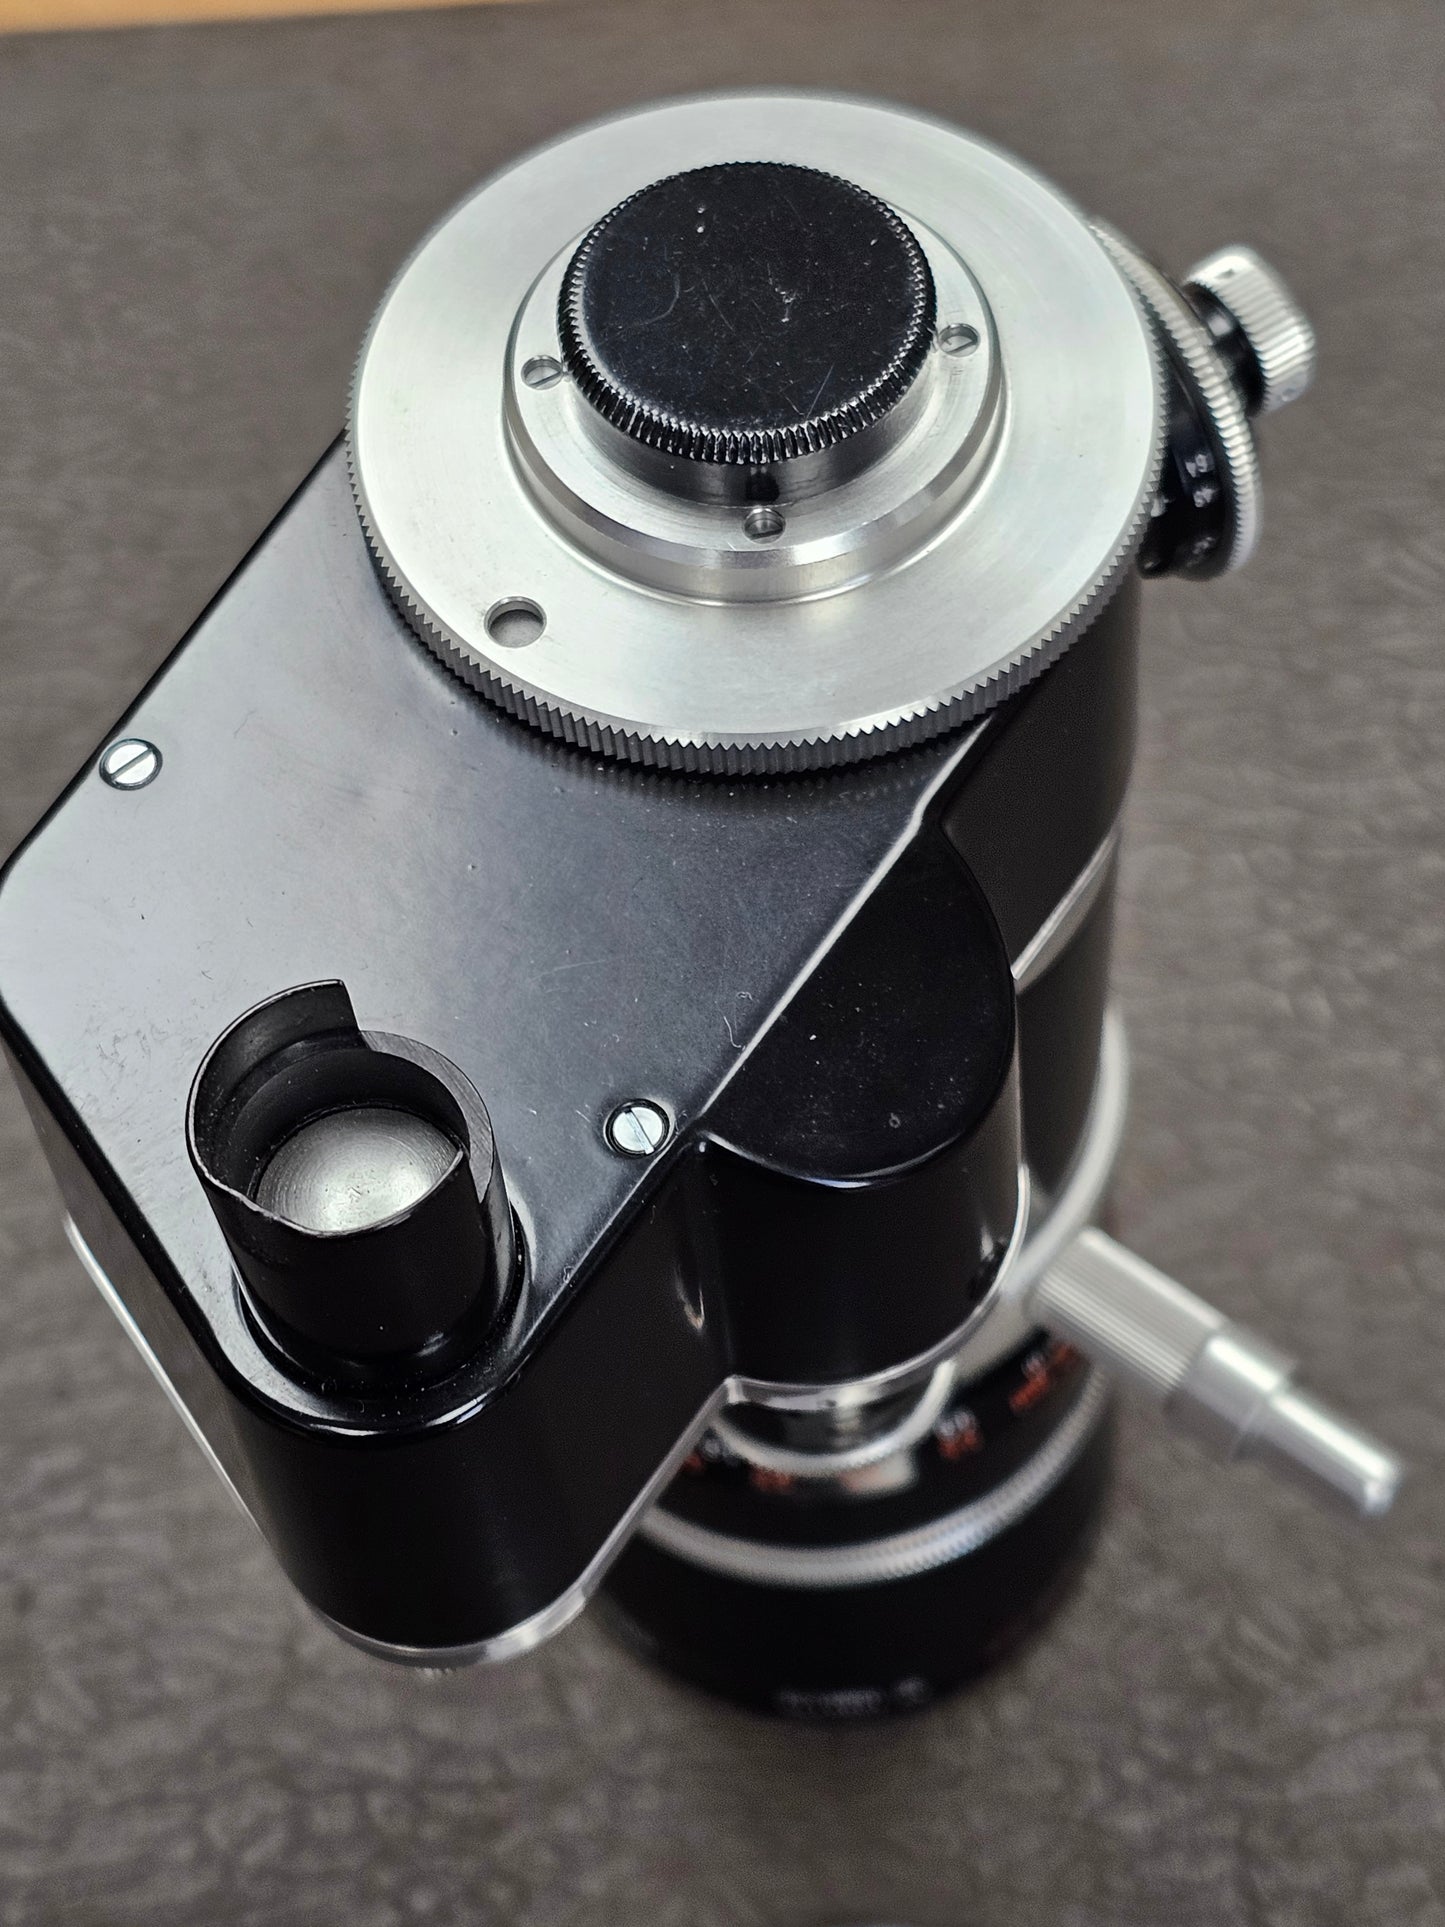 Kern Vario-Switar 18-86mm OE f/2.5 H16 RX C-Mount Zoom Lens S# 1099170